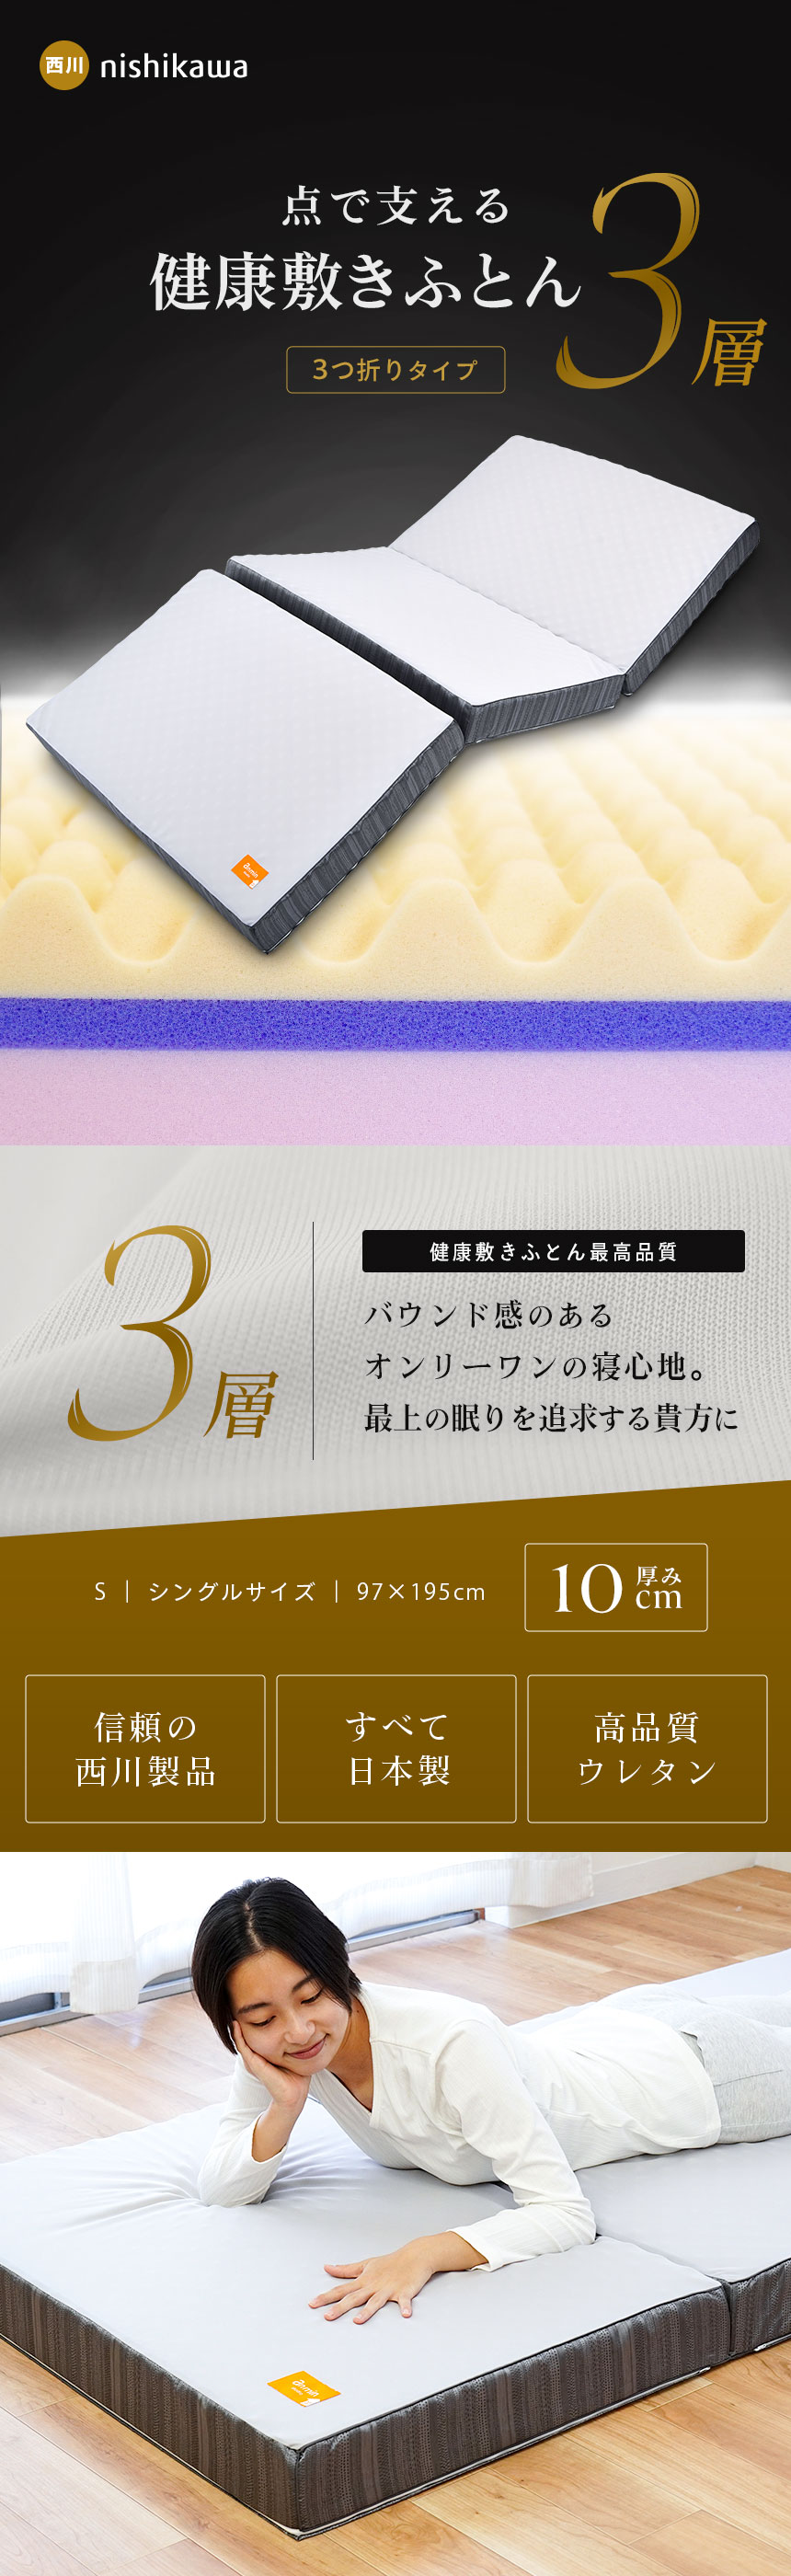 西川の健康敷きふとん 日本製三つ折りマットレス 税込み77000円